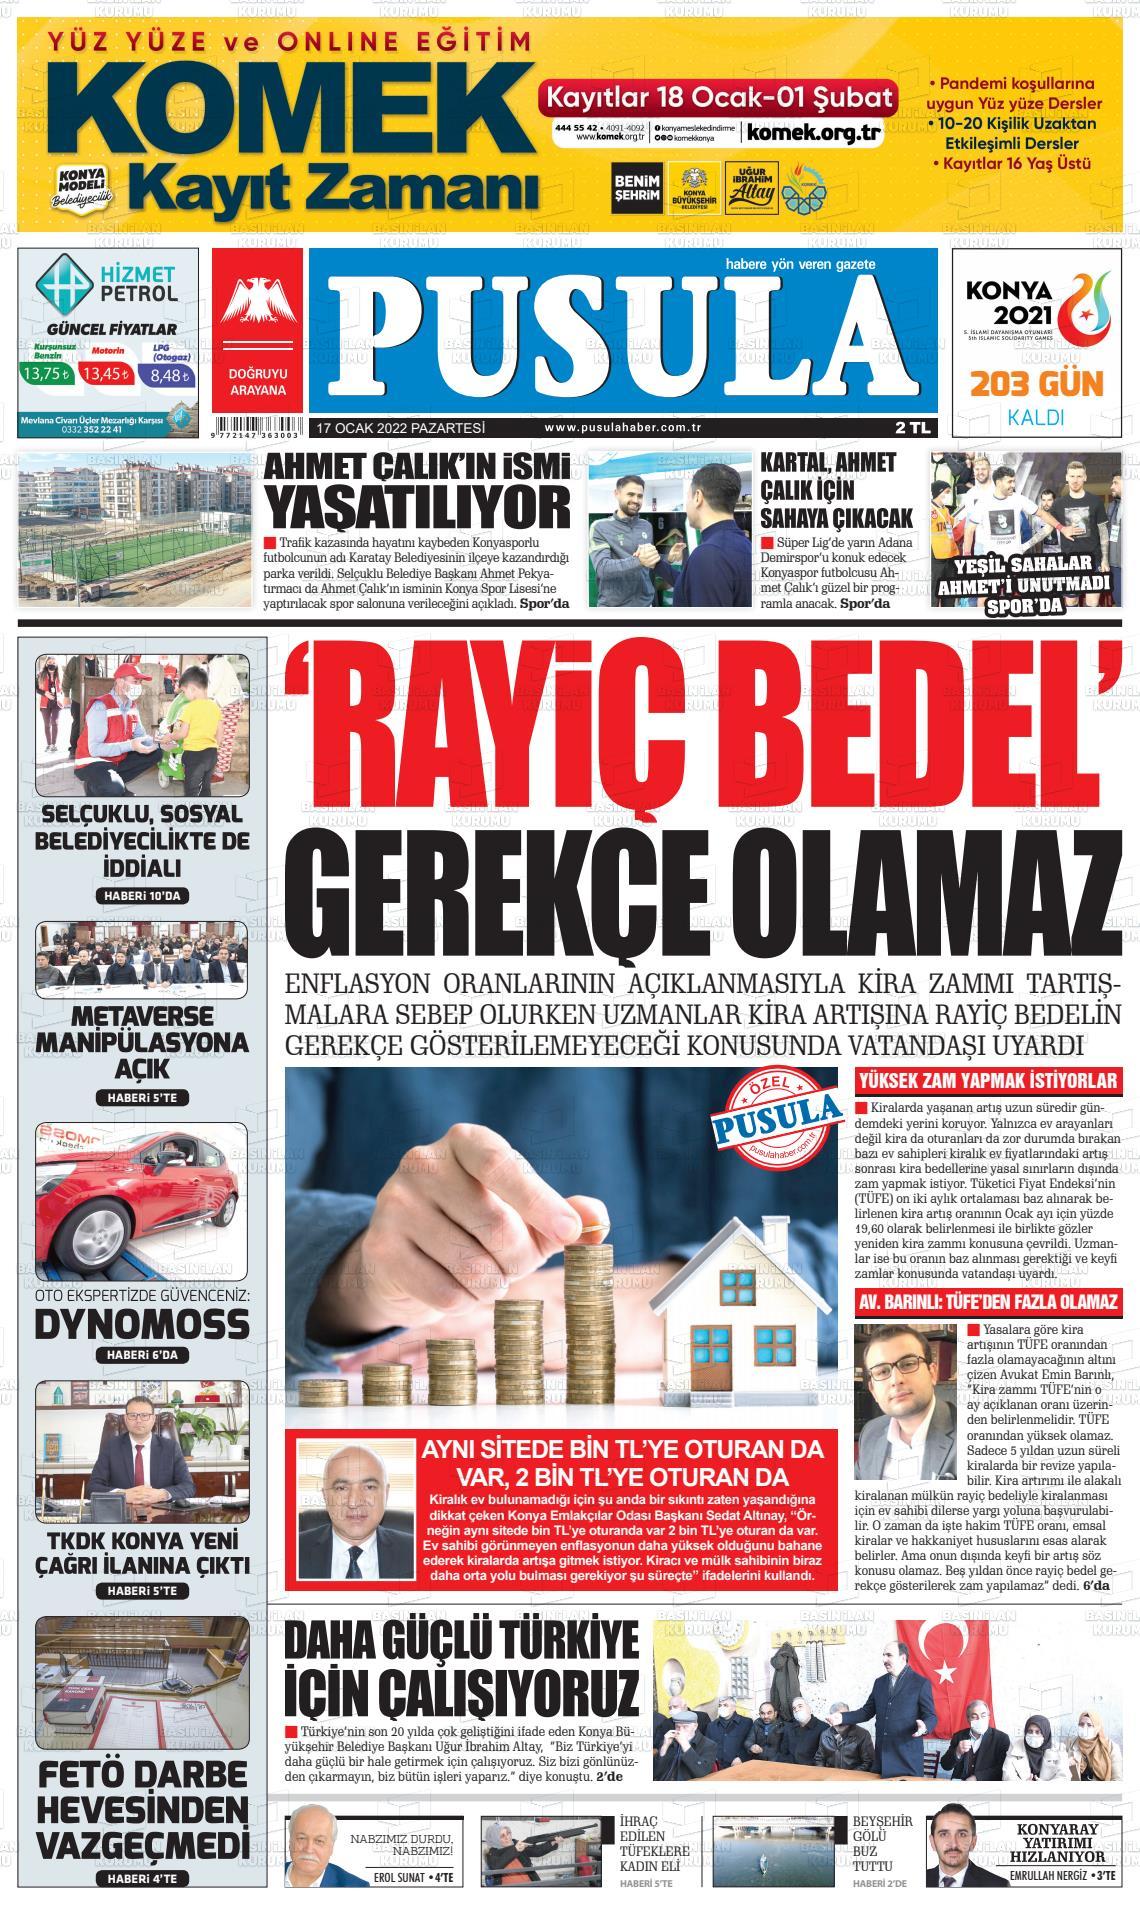 Pusula Haber Gazete Manşeti